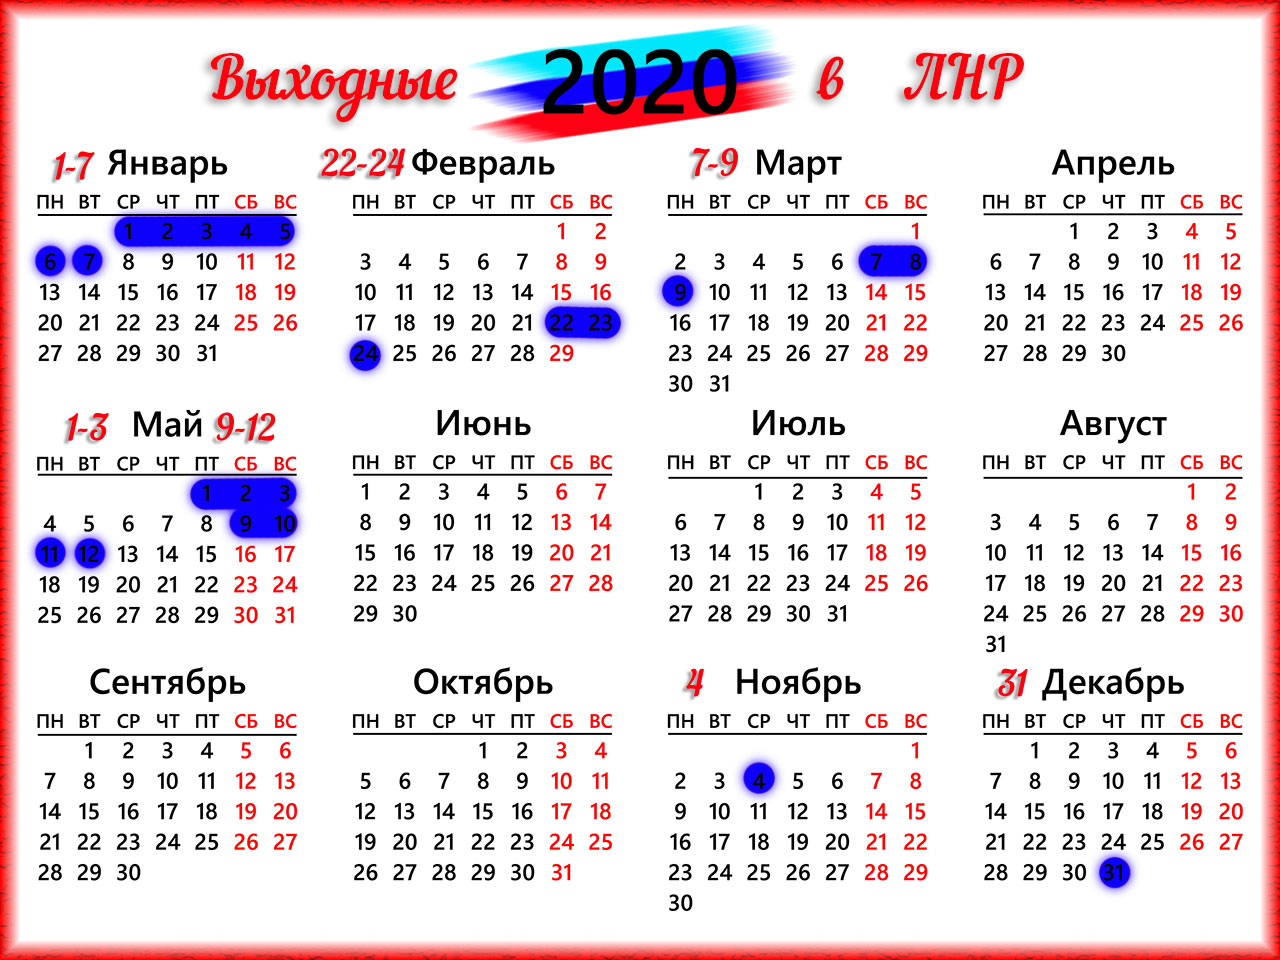 Выходные дни 2020 года. Календарь. Календарь на 2020 год. Календарь с праздничными днями. Календарь выходных дней 2020.